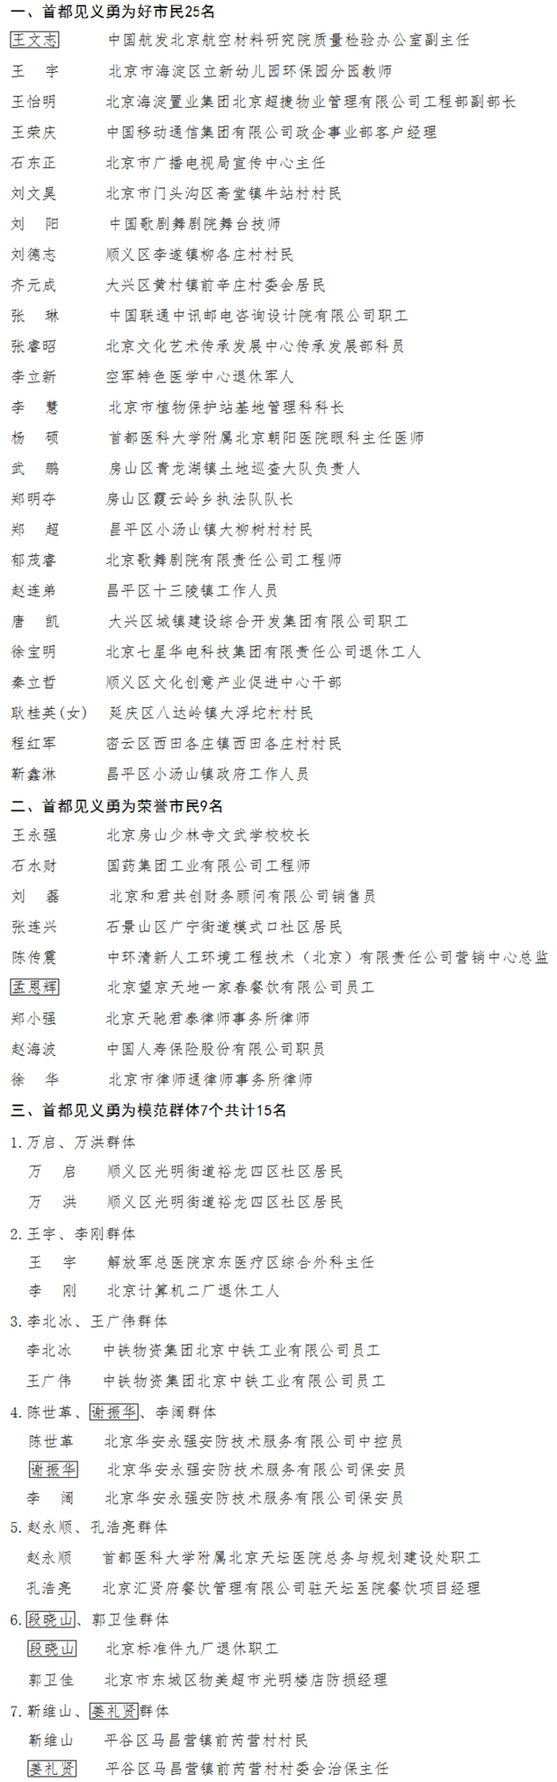 北京市广电局石东正同志被授予“首都见义勇为好市民”称号